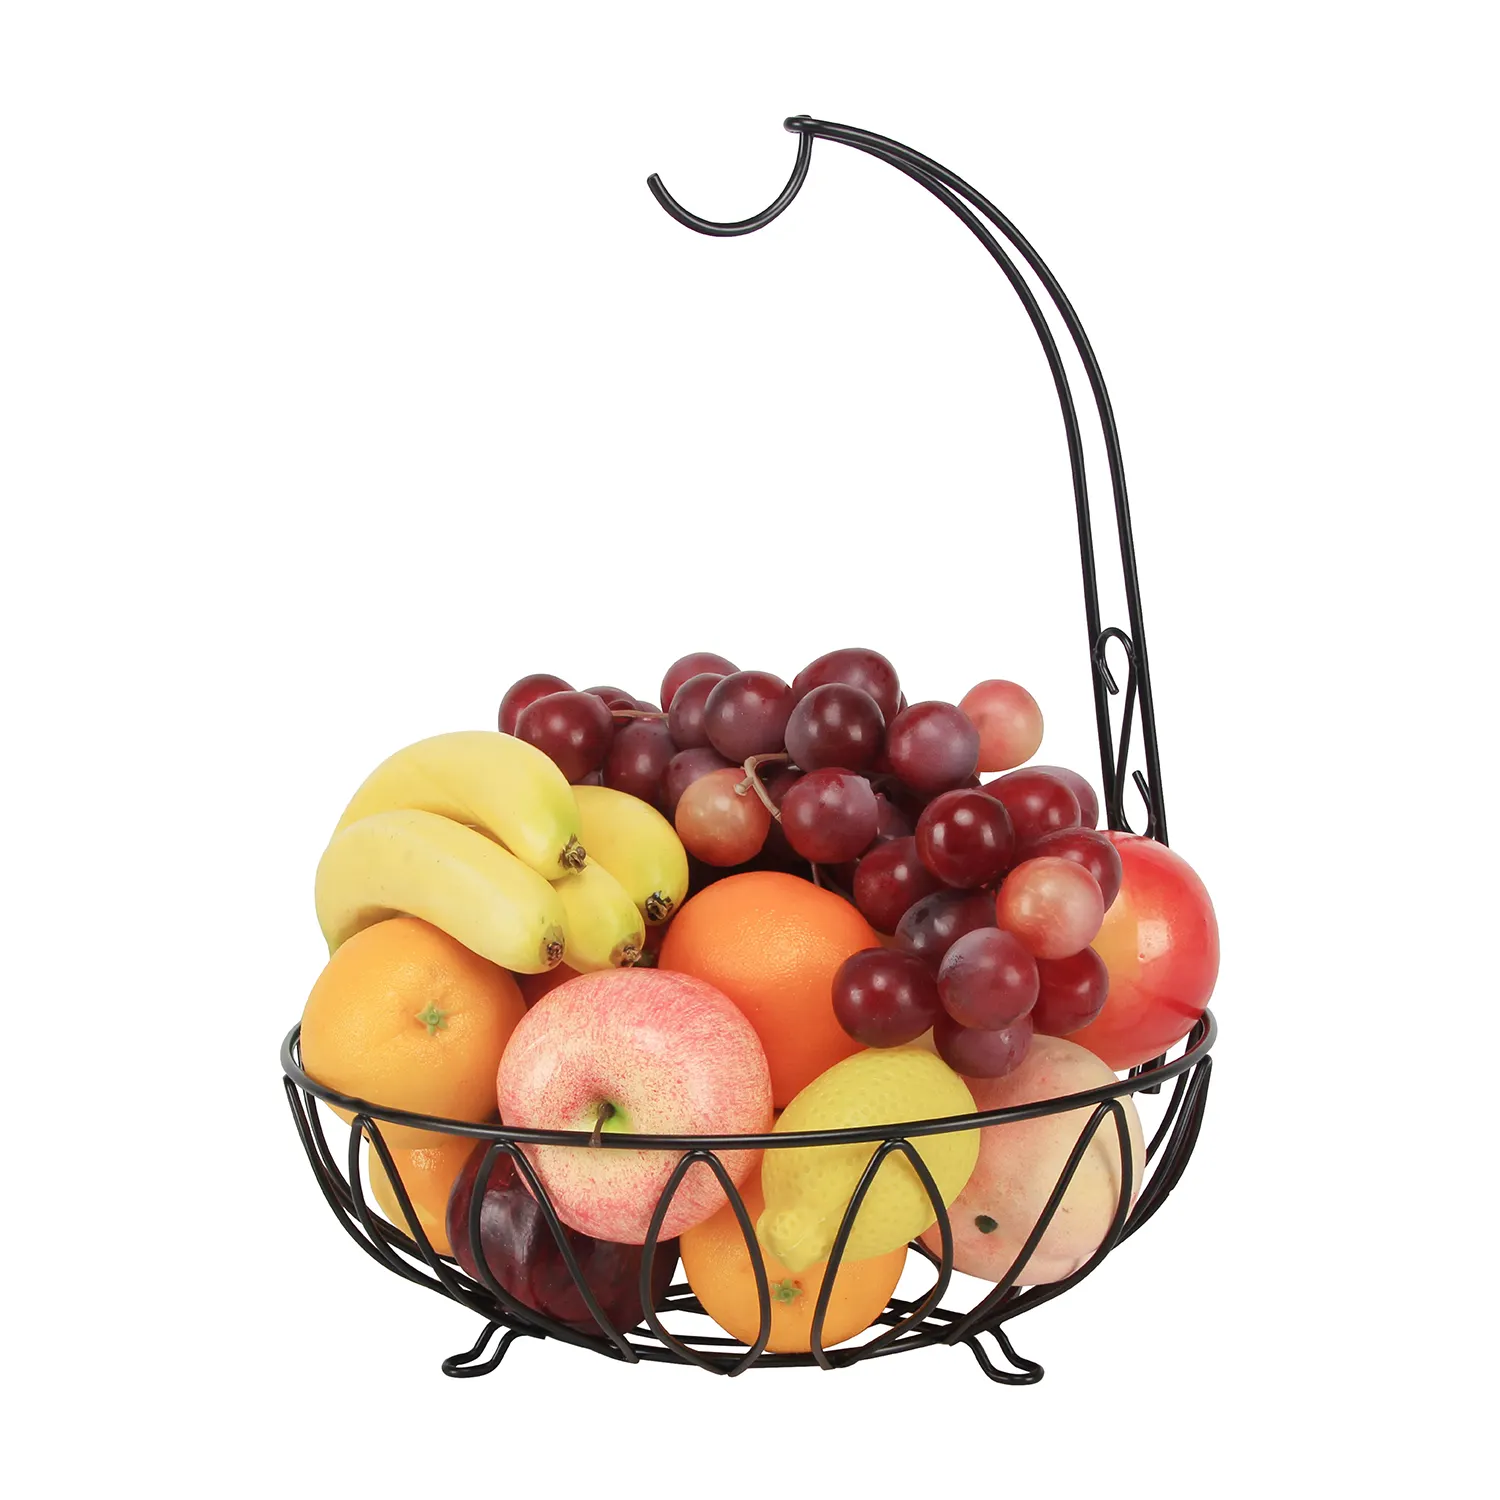 Suporte de suporte de banana para cesta de frutas, suporte flexível para uso em cozinha, fio de metal tecido à mão, novo, ecológico, com fio de ferro